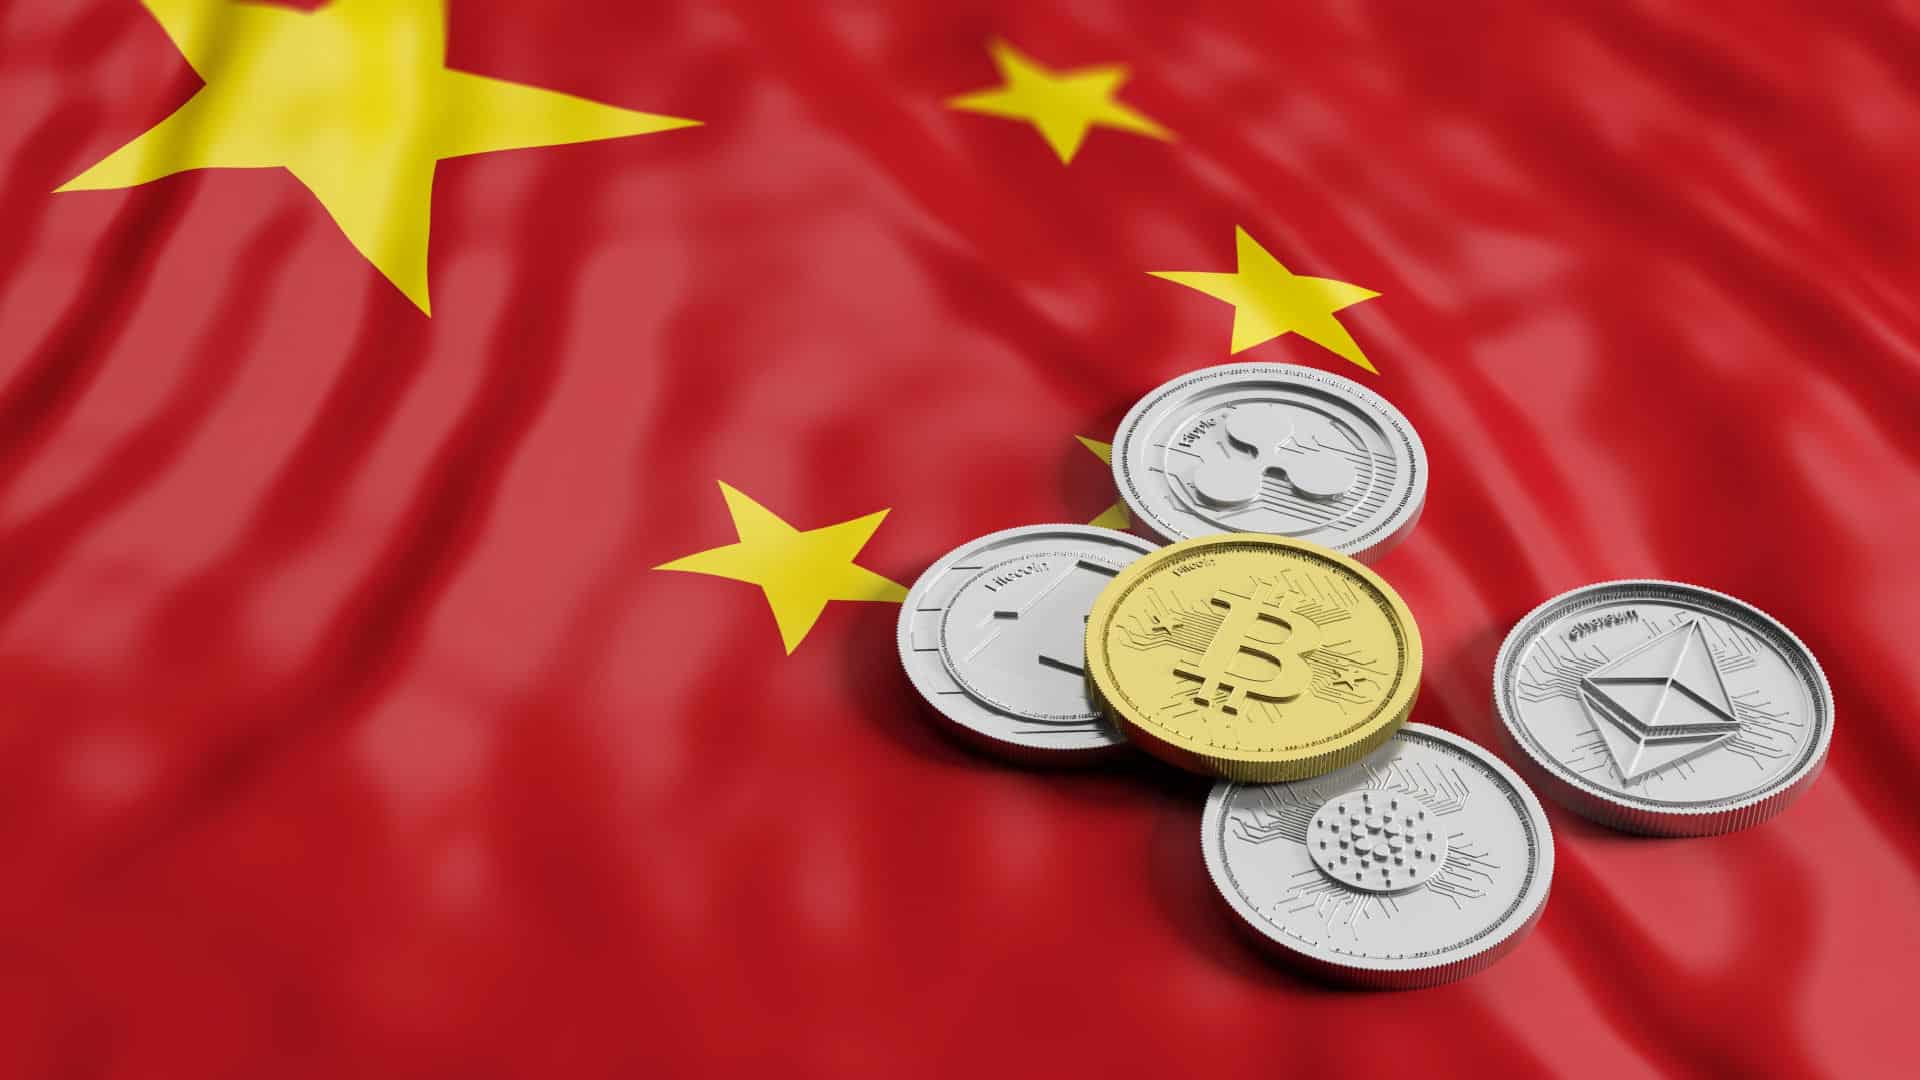 China deve reconsiderar proibição do bitcoin e criptomoedas, diz ex-funcionário do banco central - Livecoins